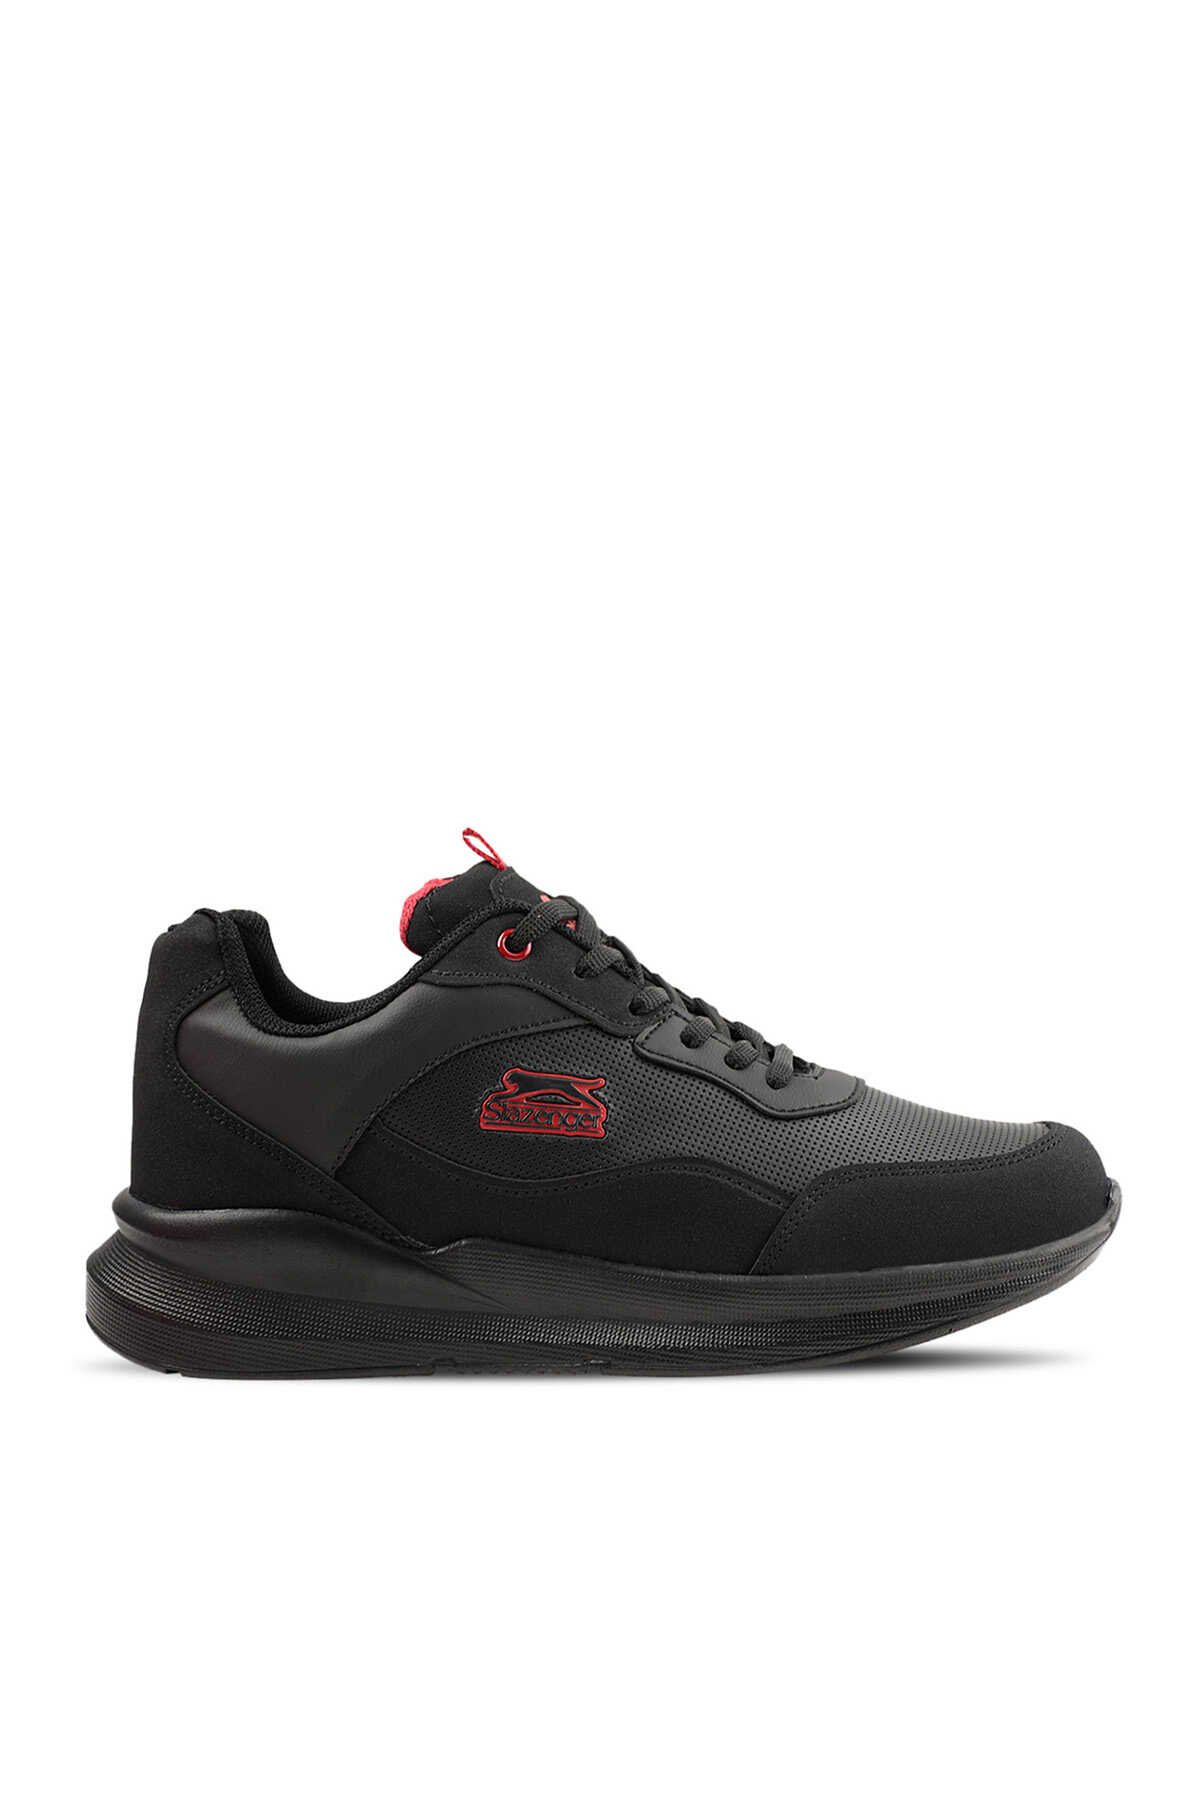 Slazenger - TAXI I Sneaker Kadın Ayakkabı Siyah / Kırmızı